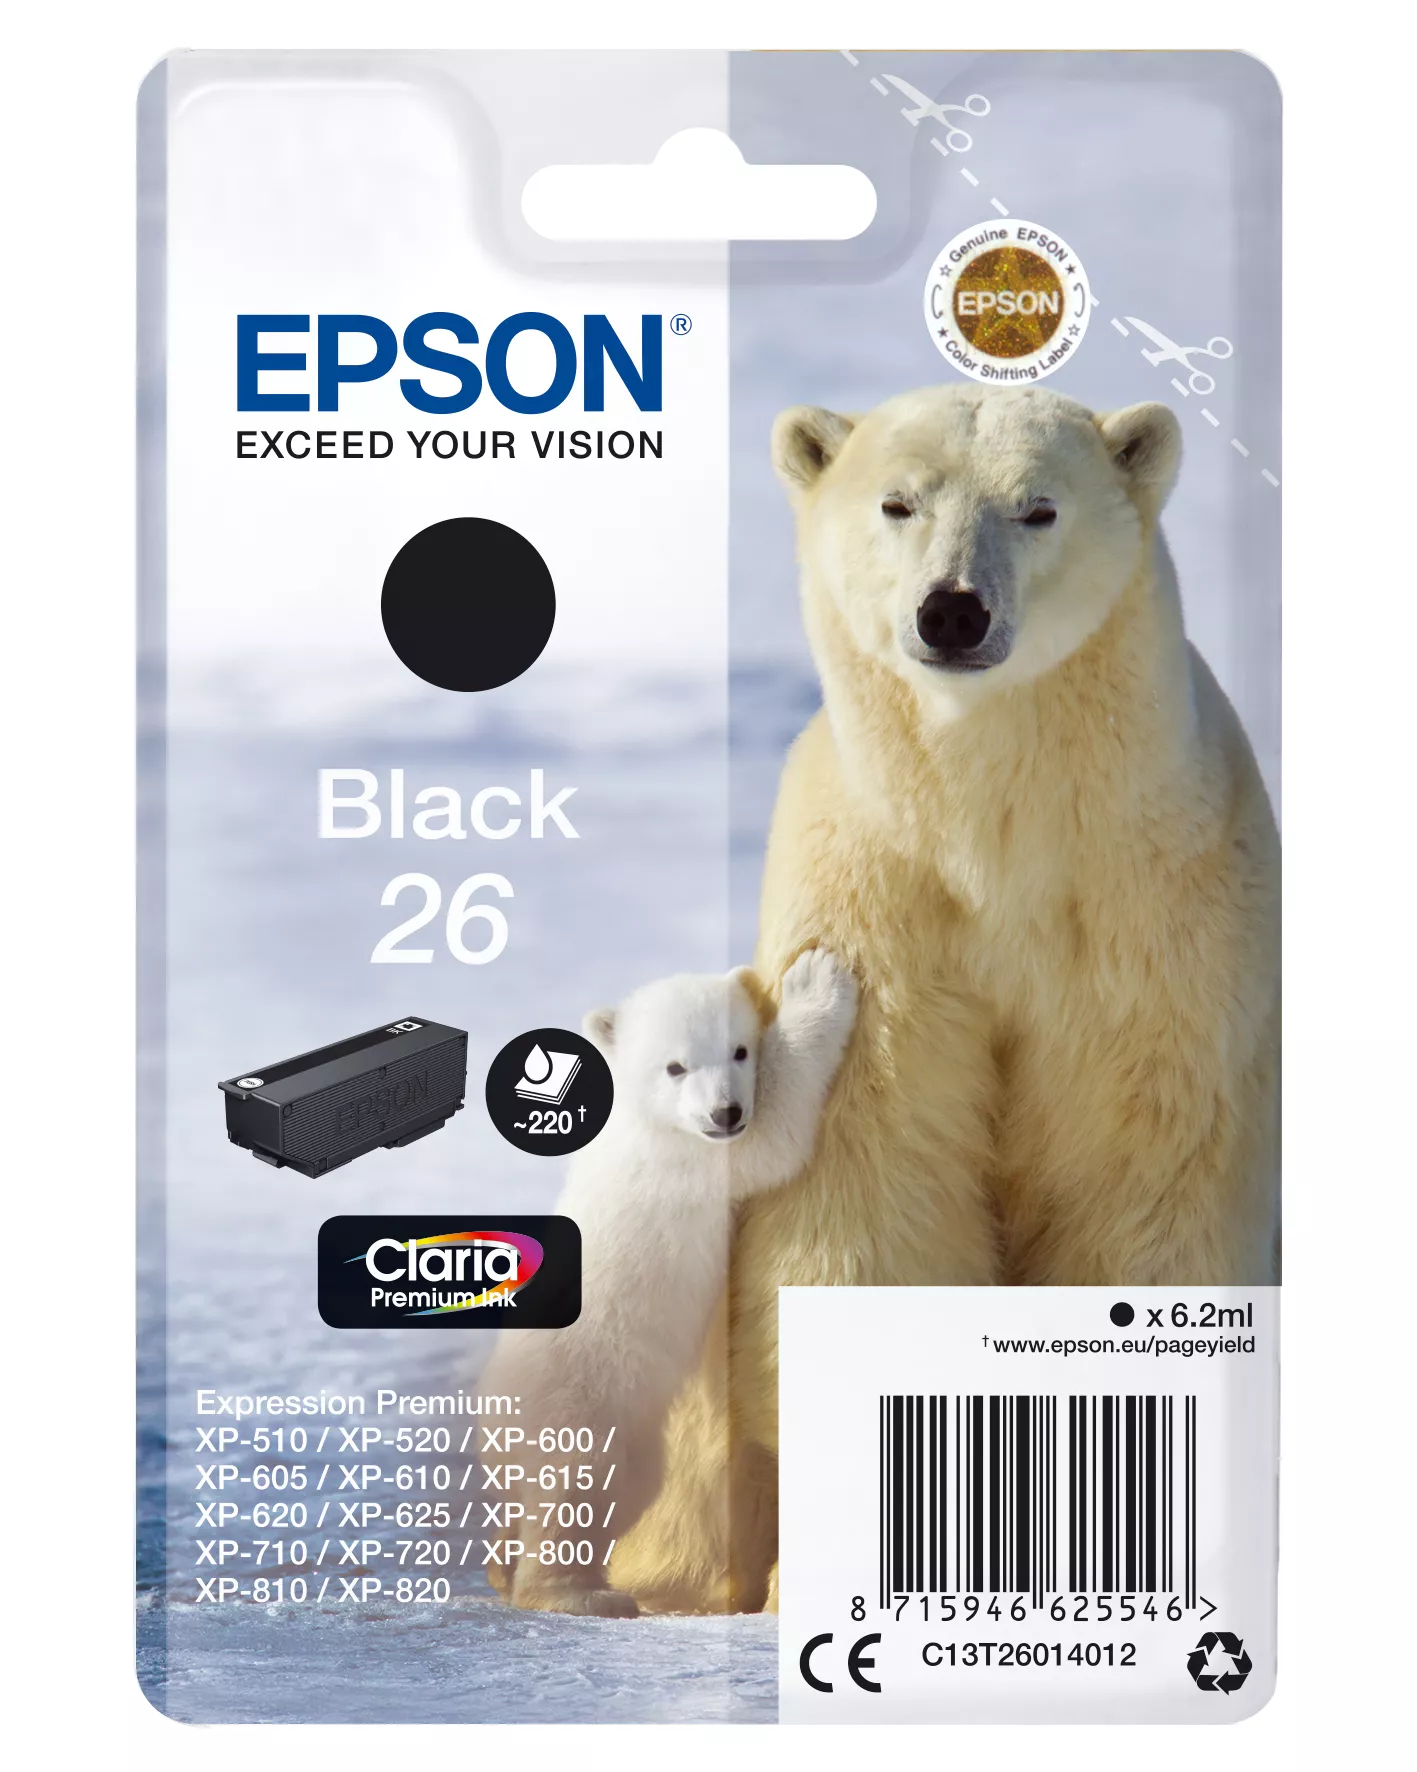 Vente EPSON 26 cartouche dencre noir capacité standard 6.2ml 220 au meilleur prix